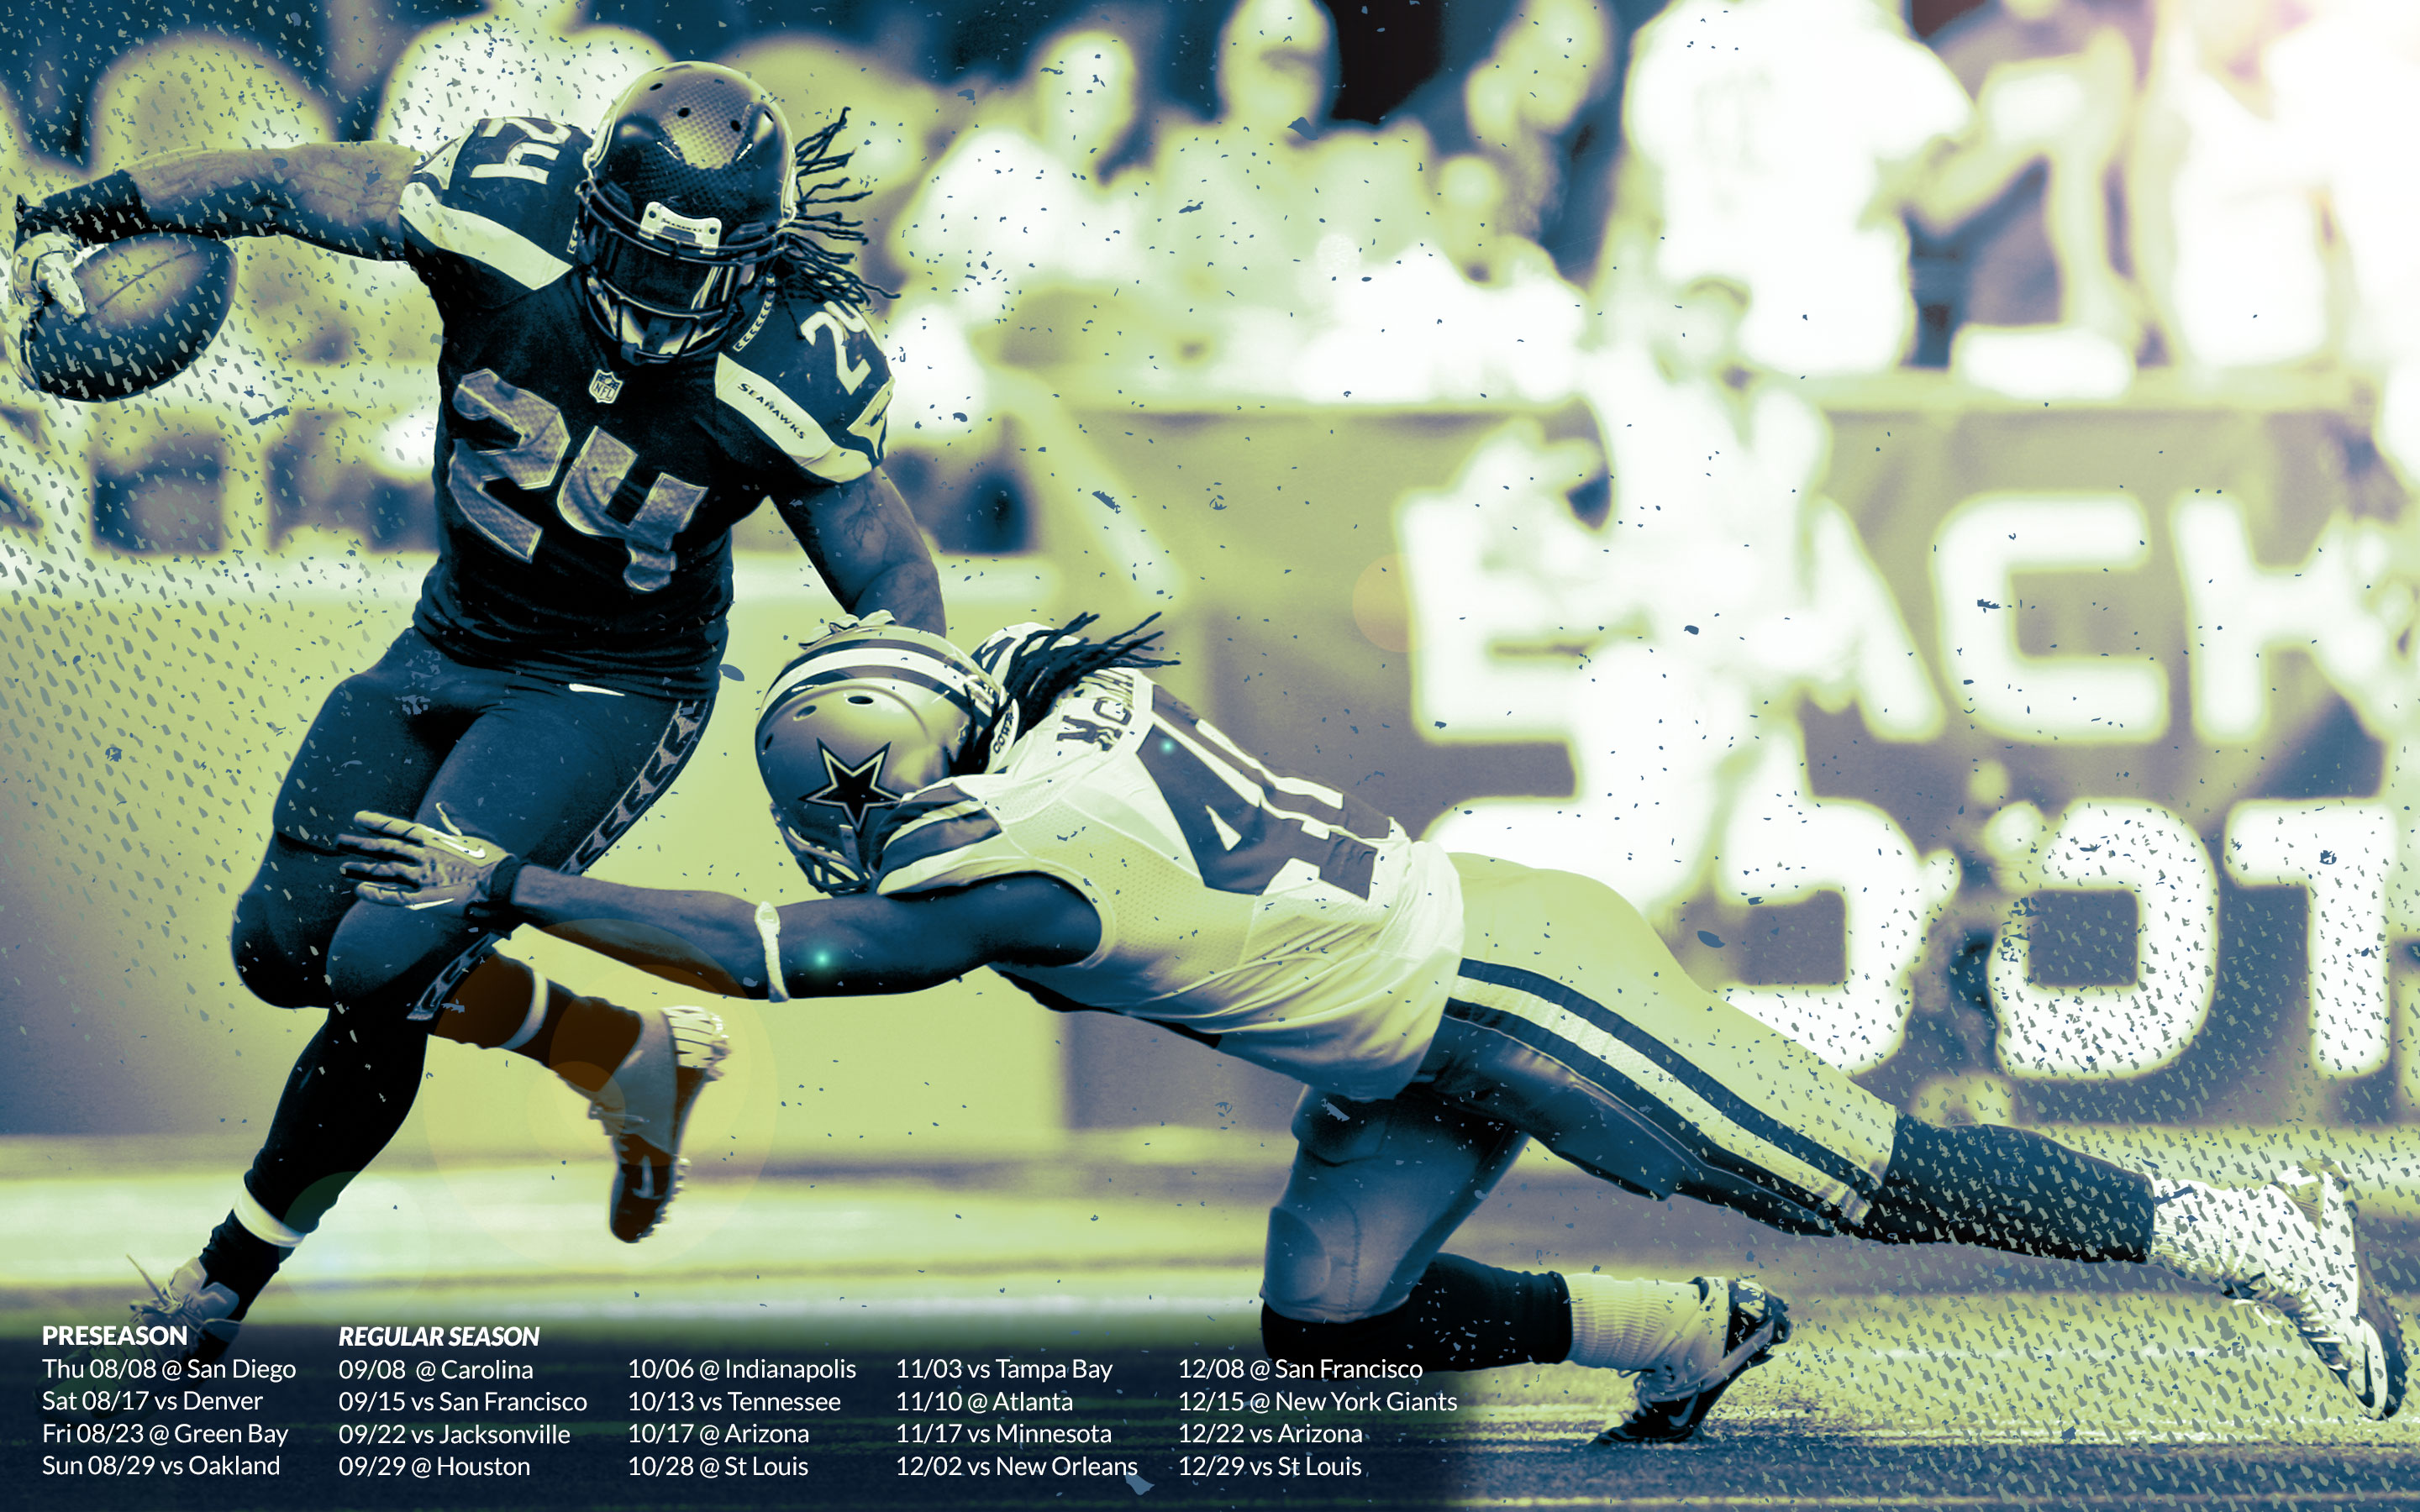 Seattle Seahawks Puter Wallpaper Desktop Background